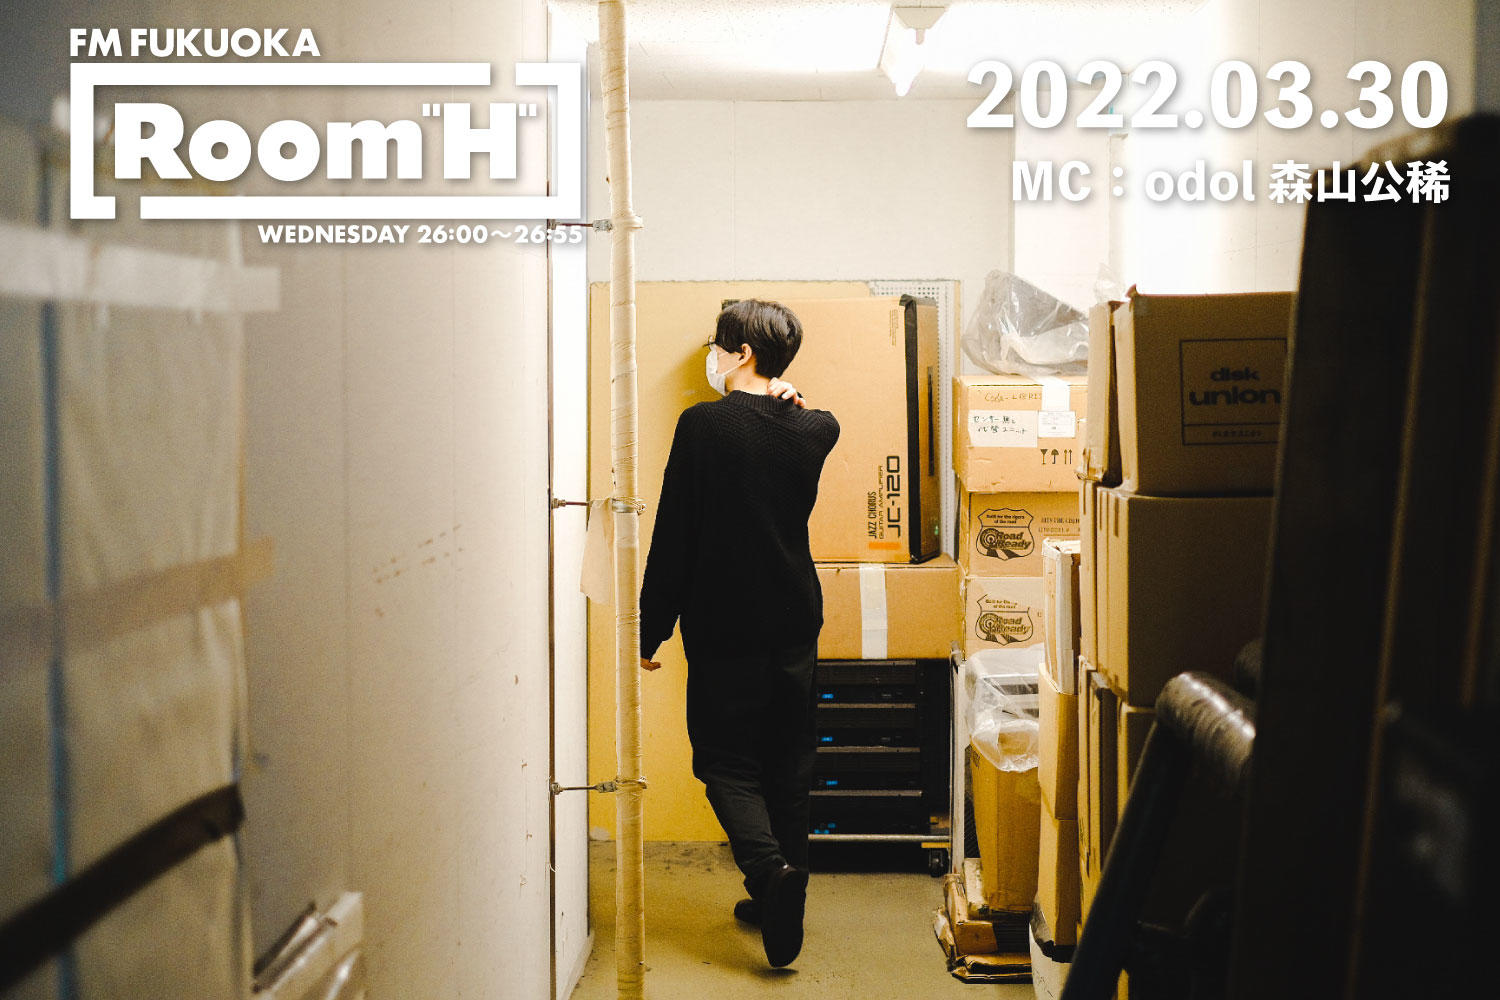 【読むラジオ】MC：森山公稀(odol) アメリカの音楽家キース・ケニフ特集「Room H」 -2022.03.30-